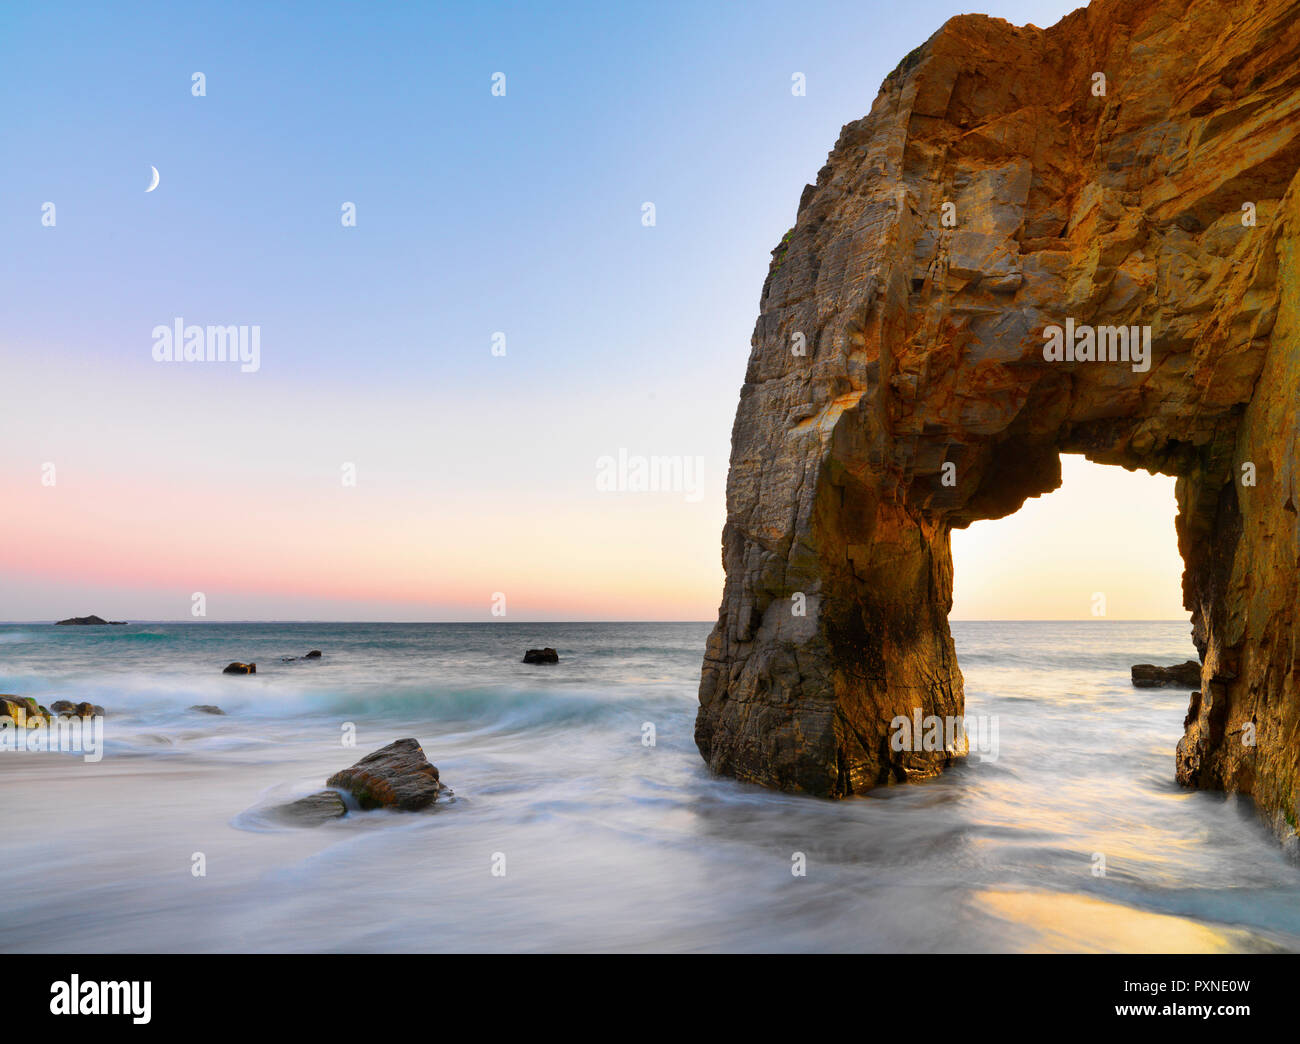 France, Brittany, Morbihan, Cote Sauvage, Quiberon Peninsula, The Arch at Port Blanc at dusk Stock Photo